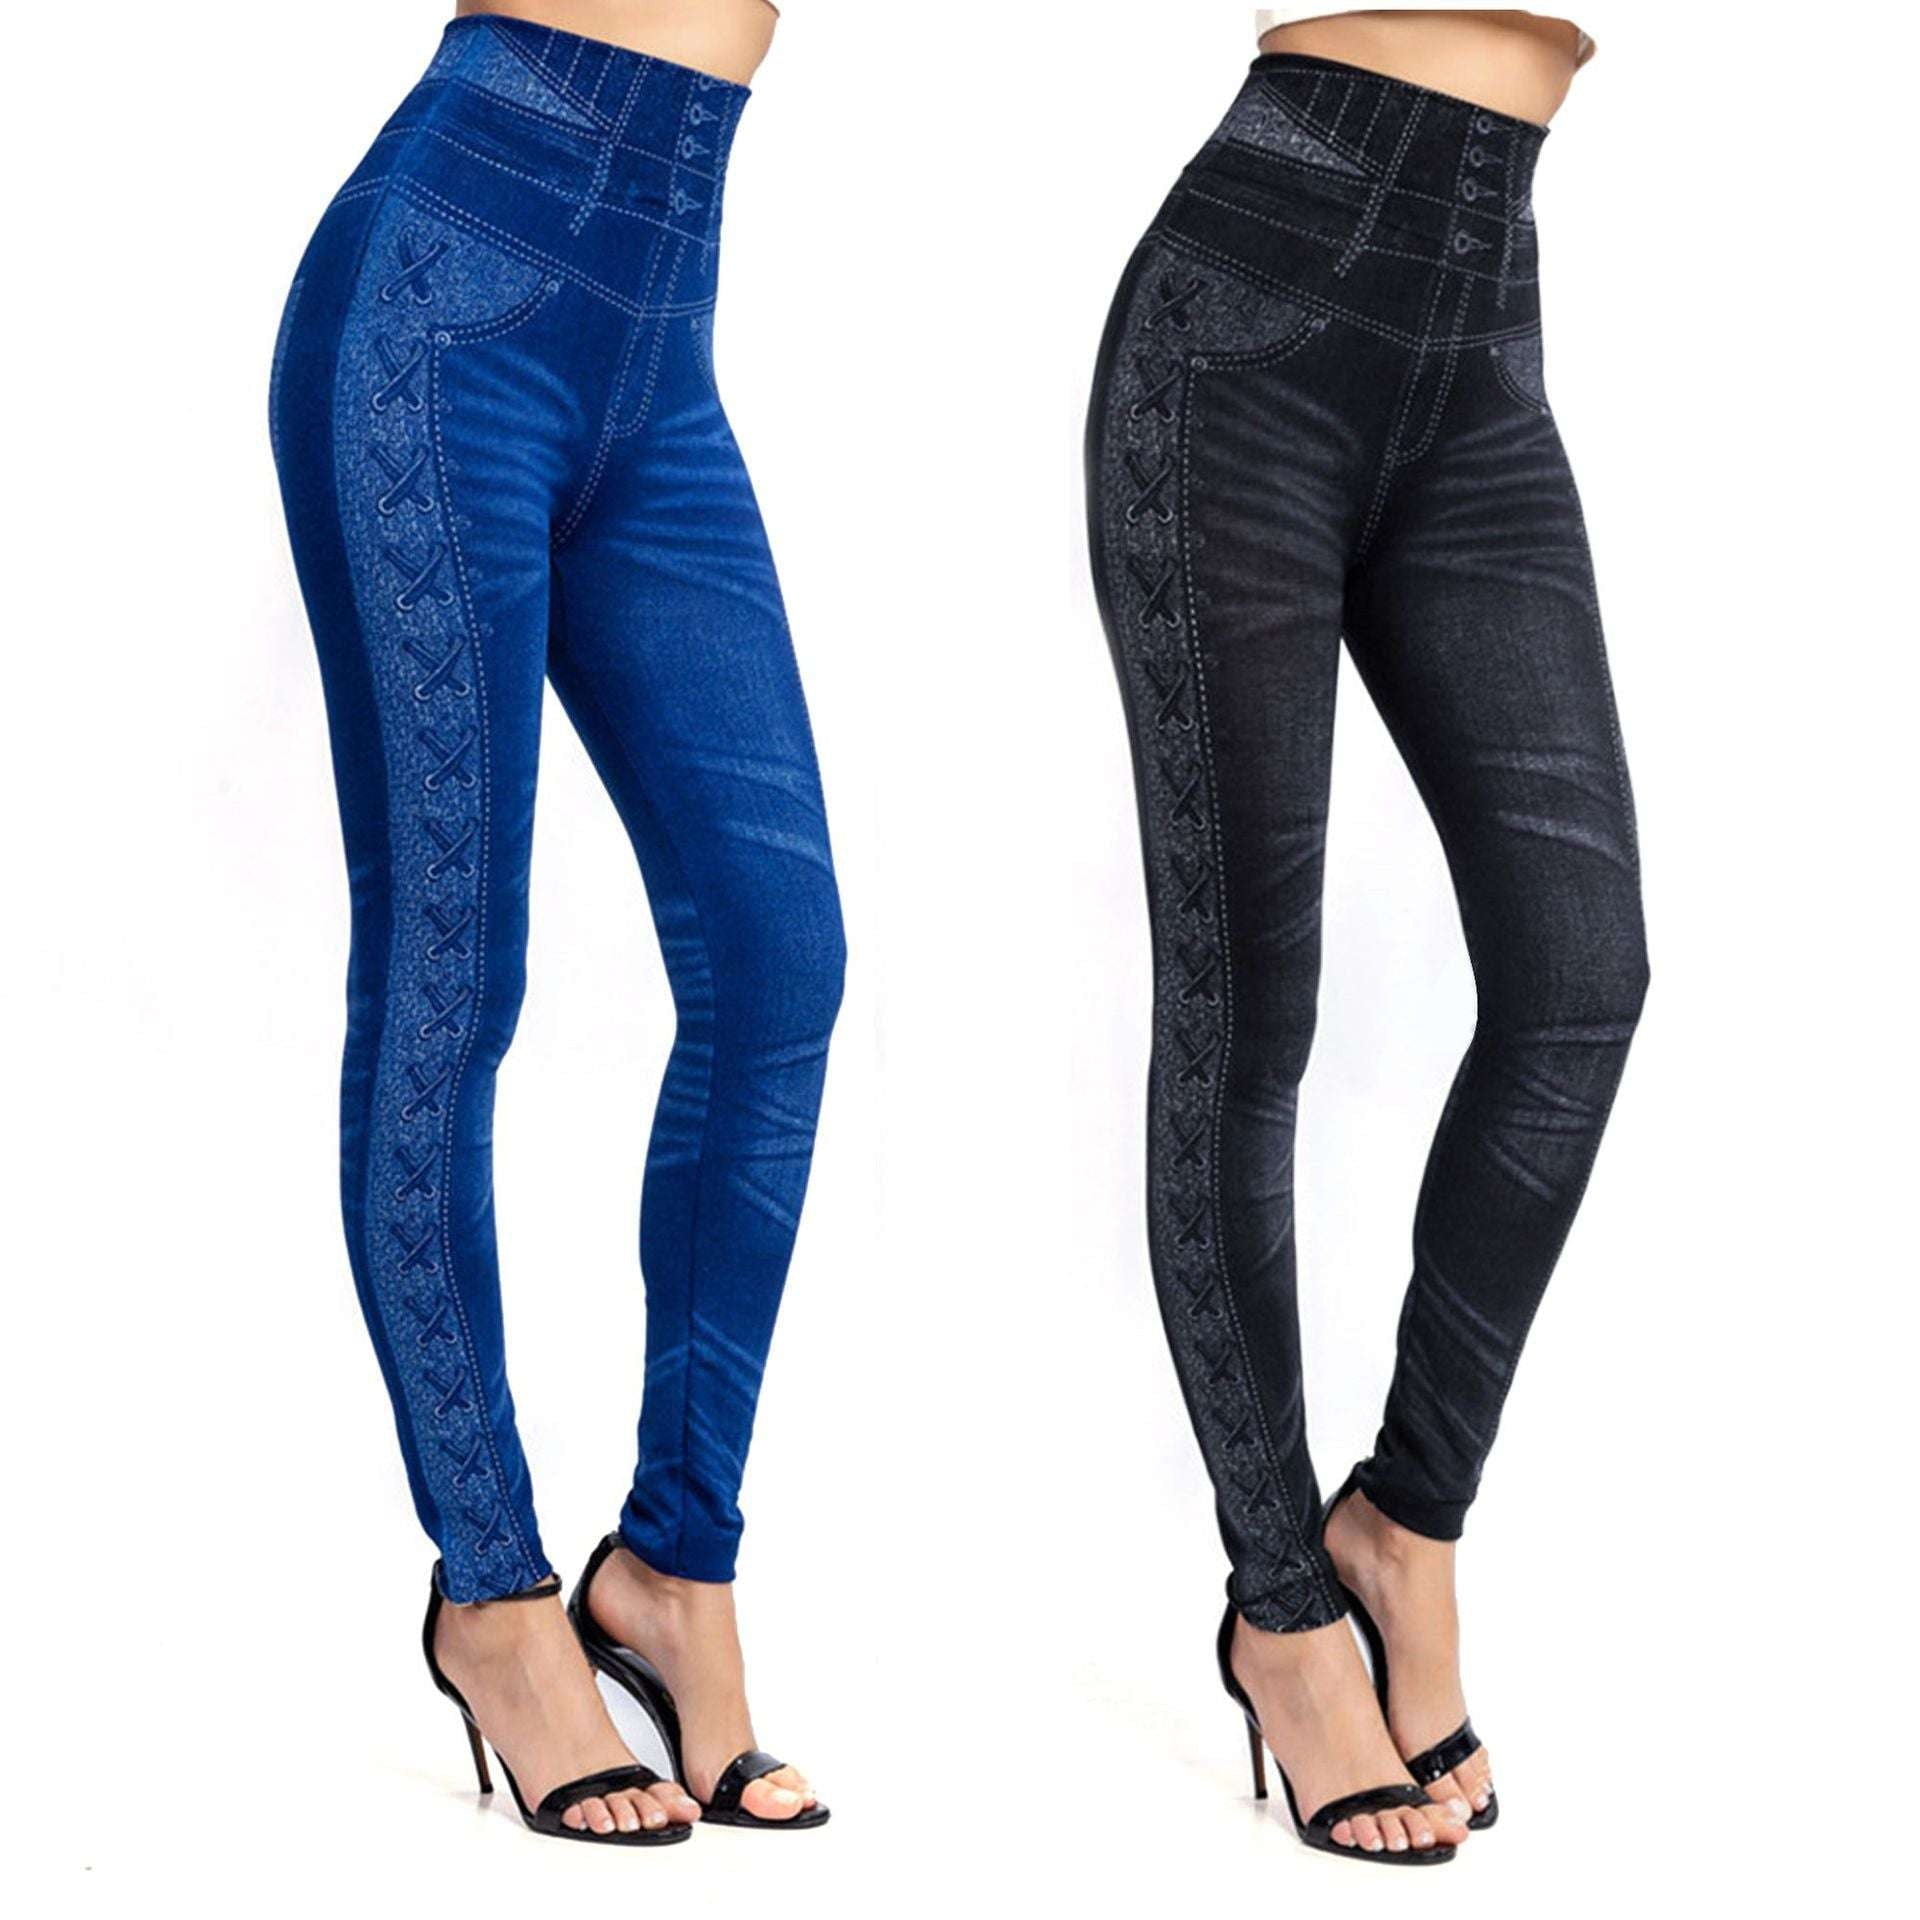 breathable jeans leggings, slim fit leggings, women denim jeggings - available at Sparq Mart